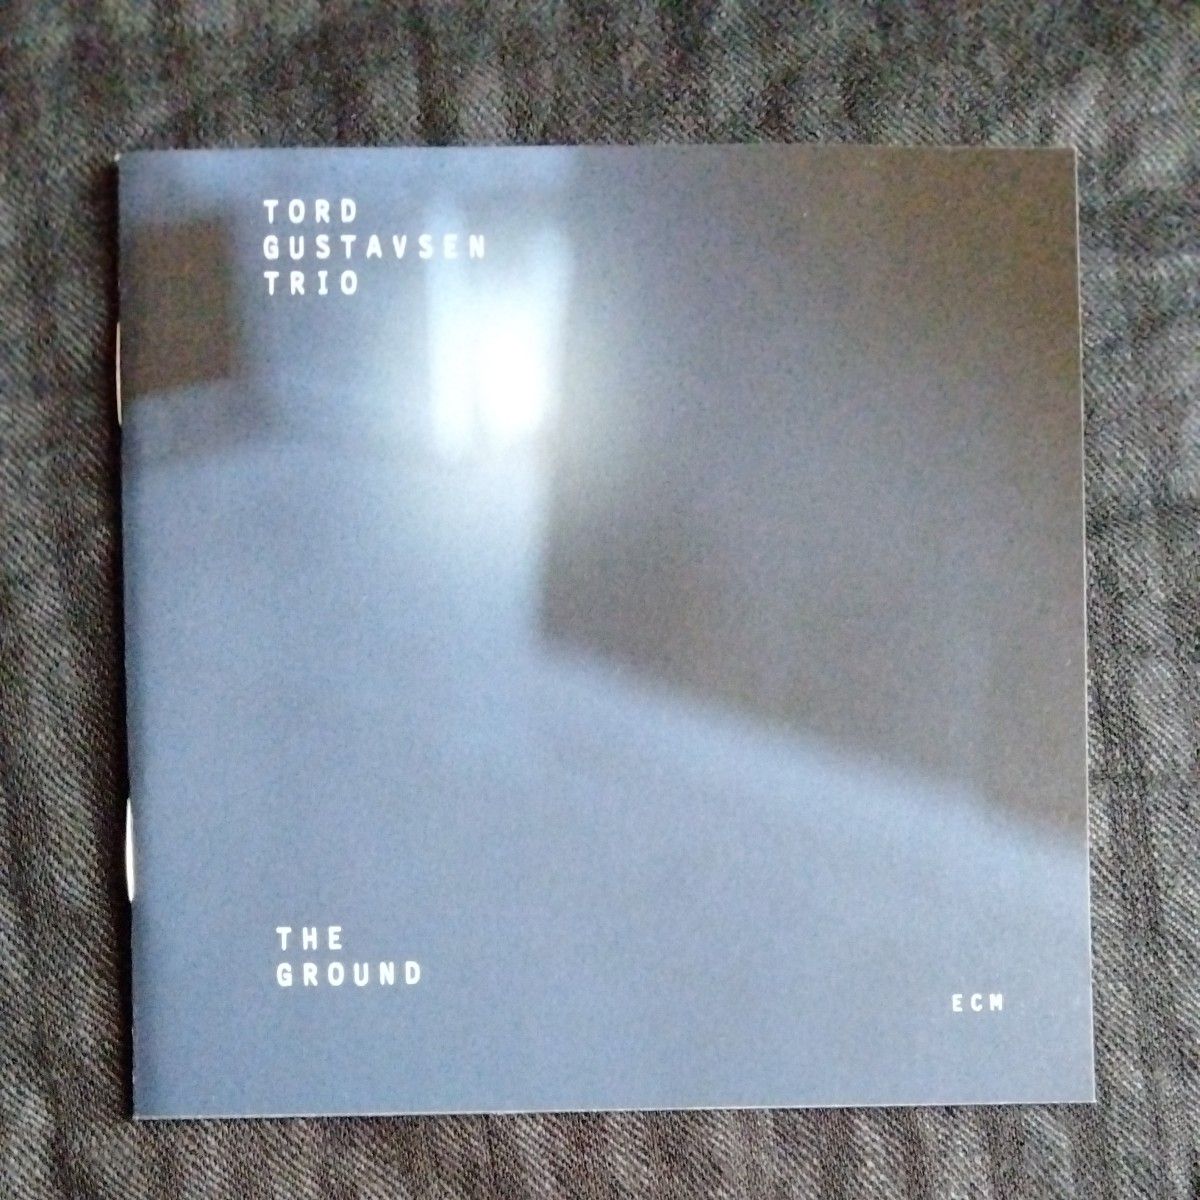 トルド・グスタフセン　Tord Gustavsen Trio - THE GROUND　ECM 独盤CD